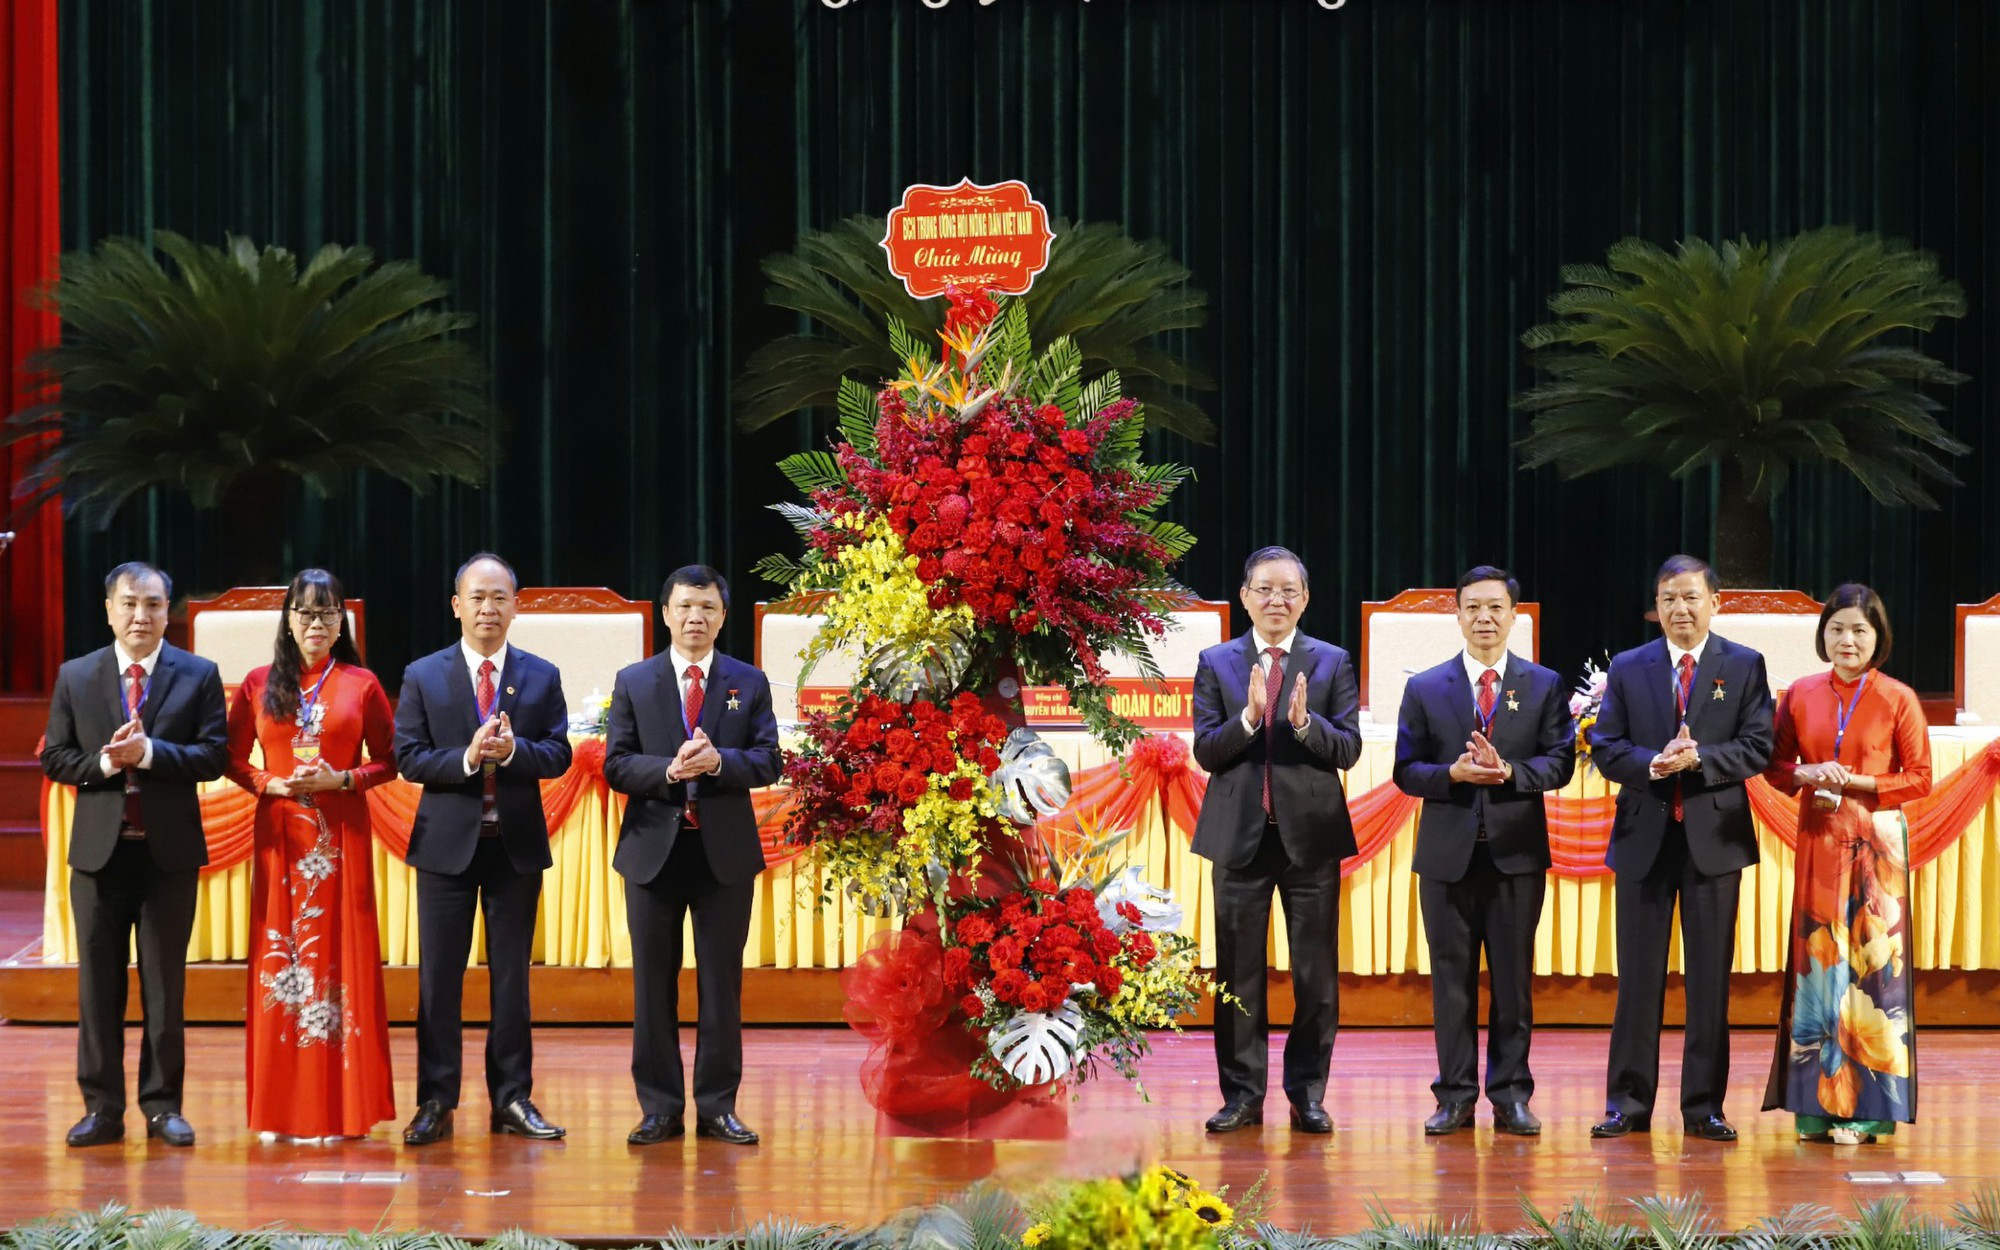 Đại hội đại biểu Hội Nông dân tỉnh Bắc Giang lần thứ X, đề ra 6 nhiệm vụ trọng tâm trong nhiệm kỳ mới